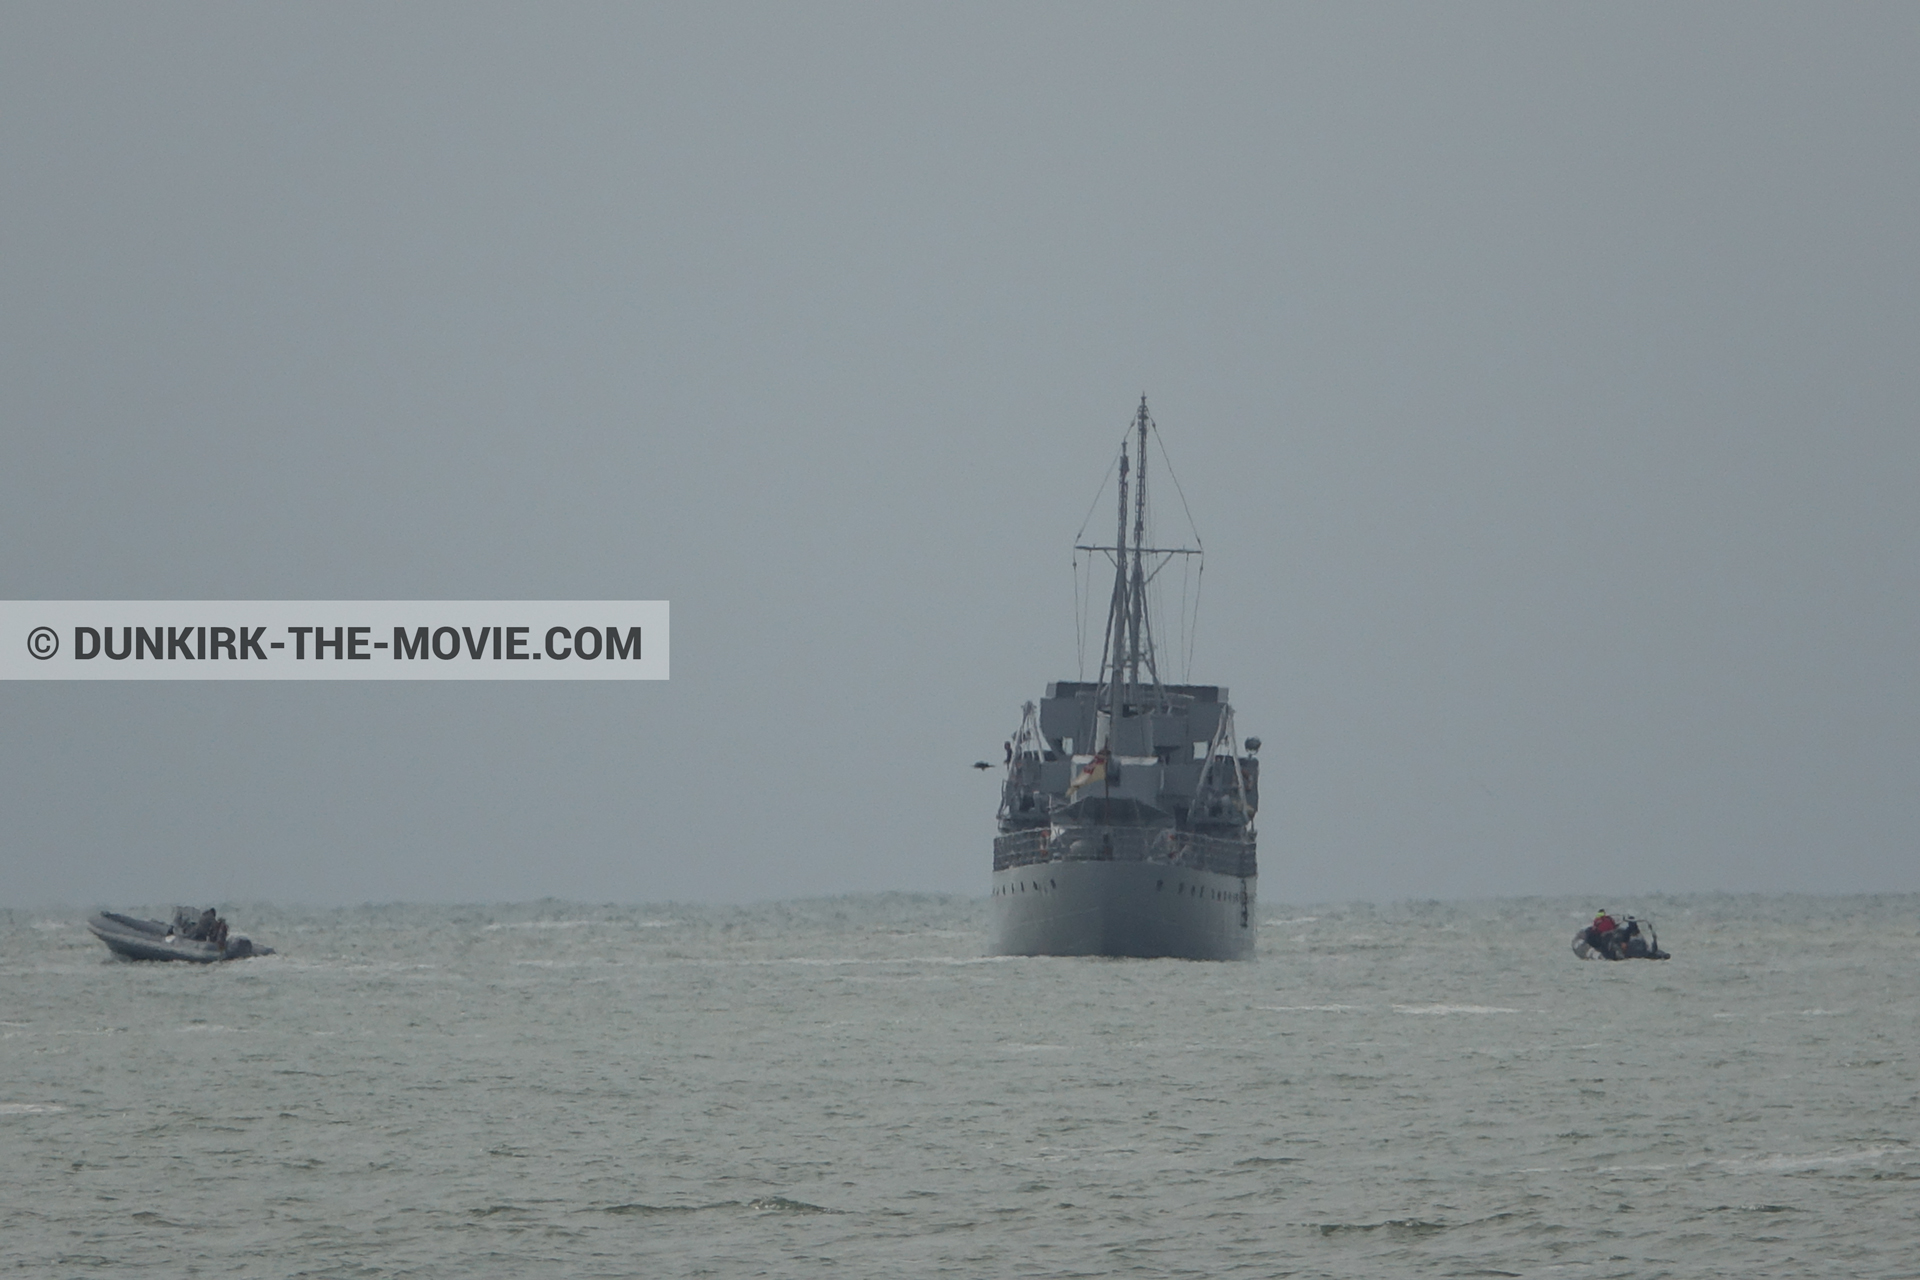 Fotos con barco, cielo gris, mares agitados,  durante el rodaje de la película Dunkerque de Nolan